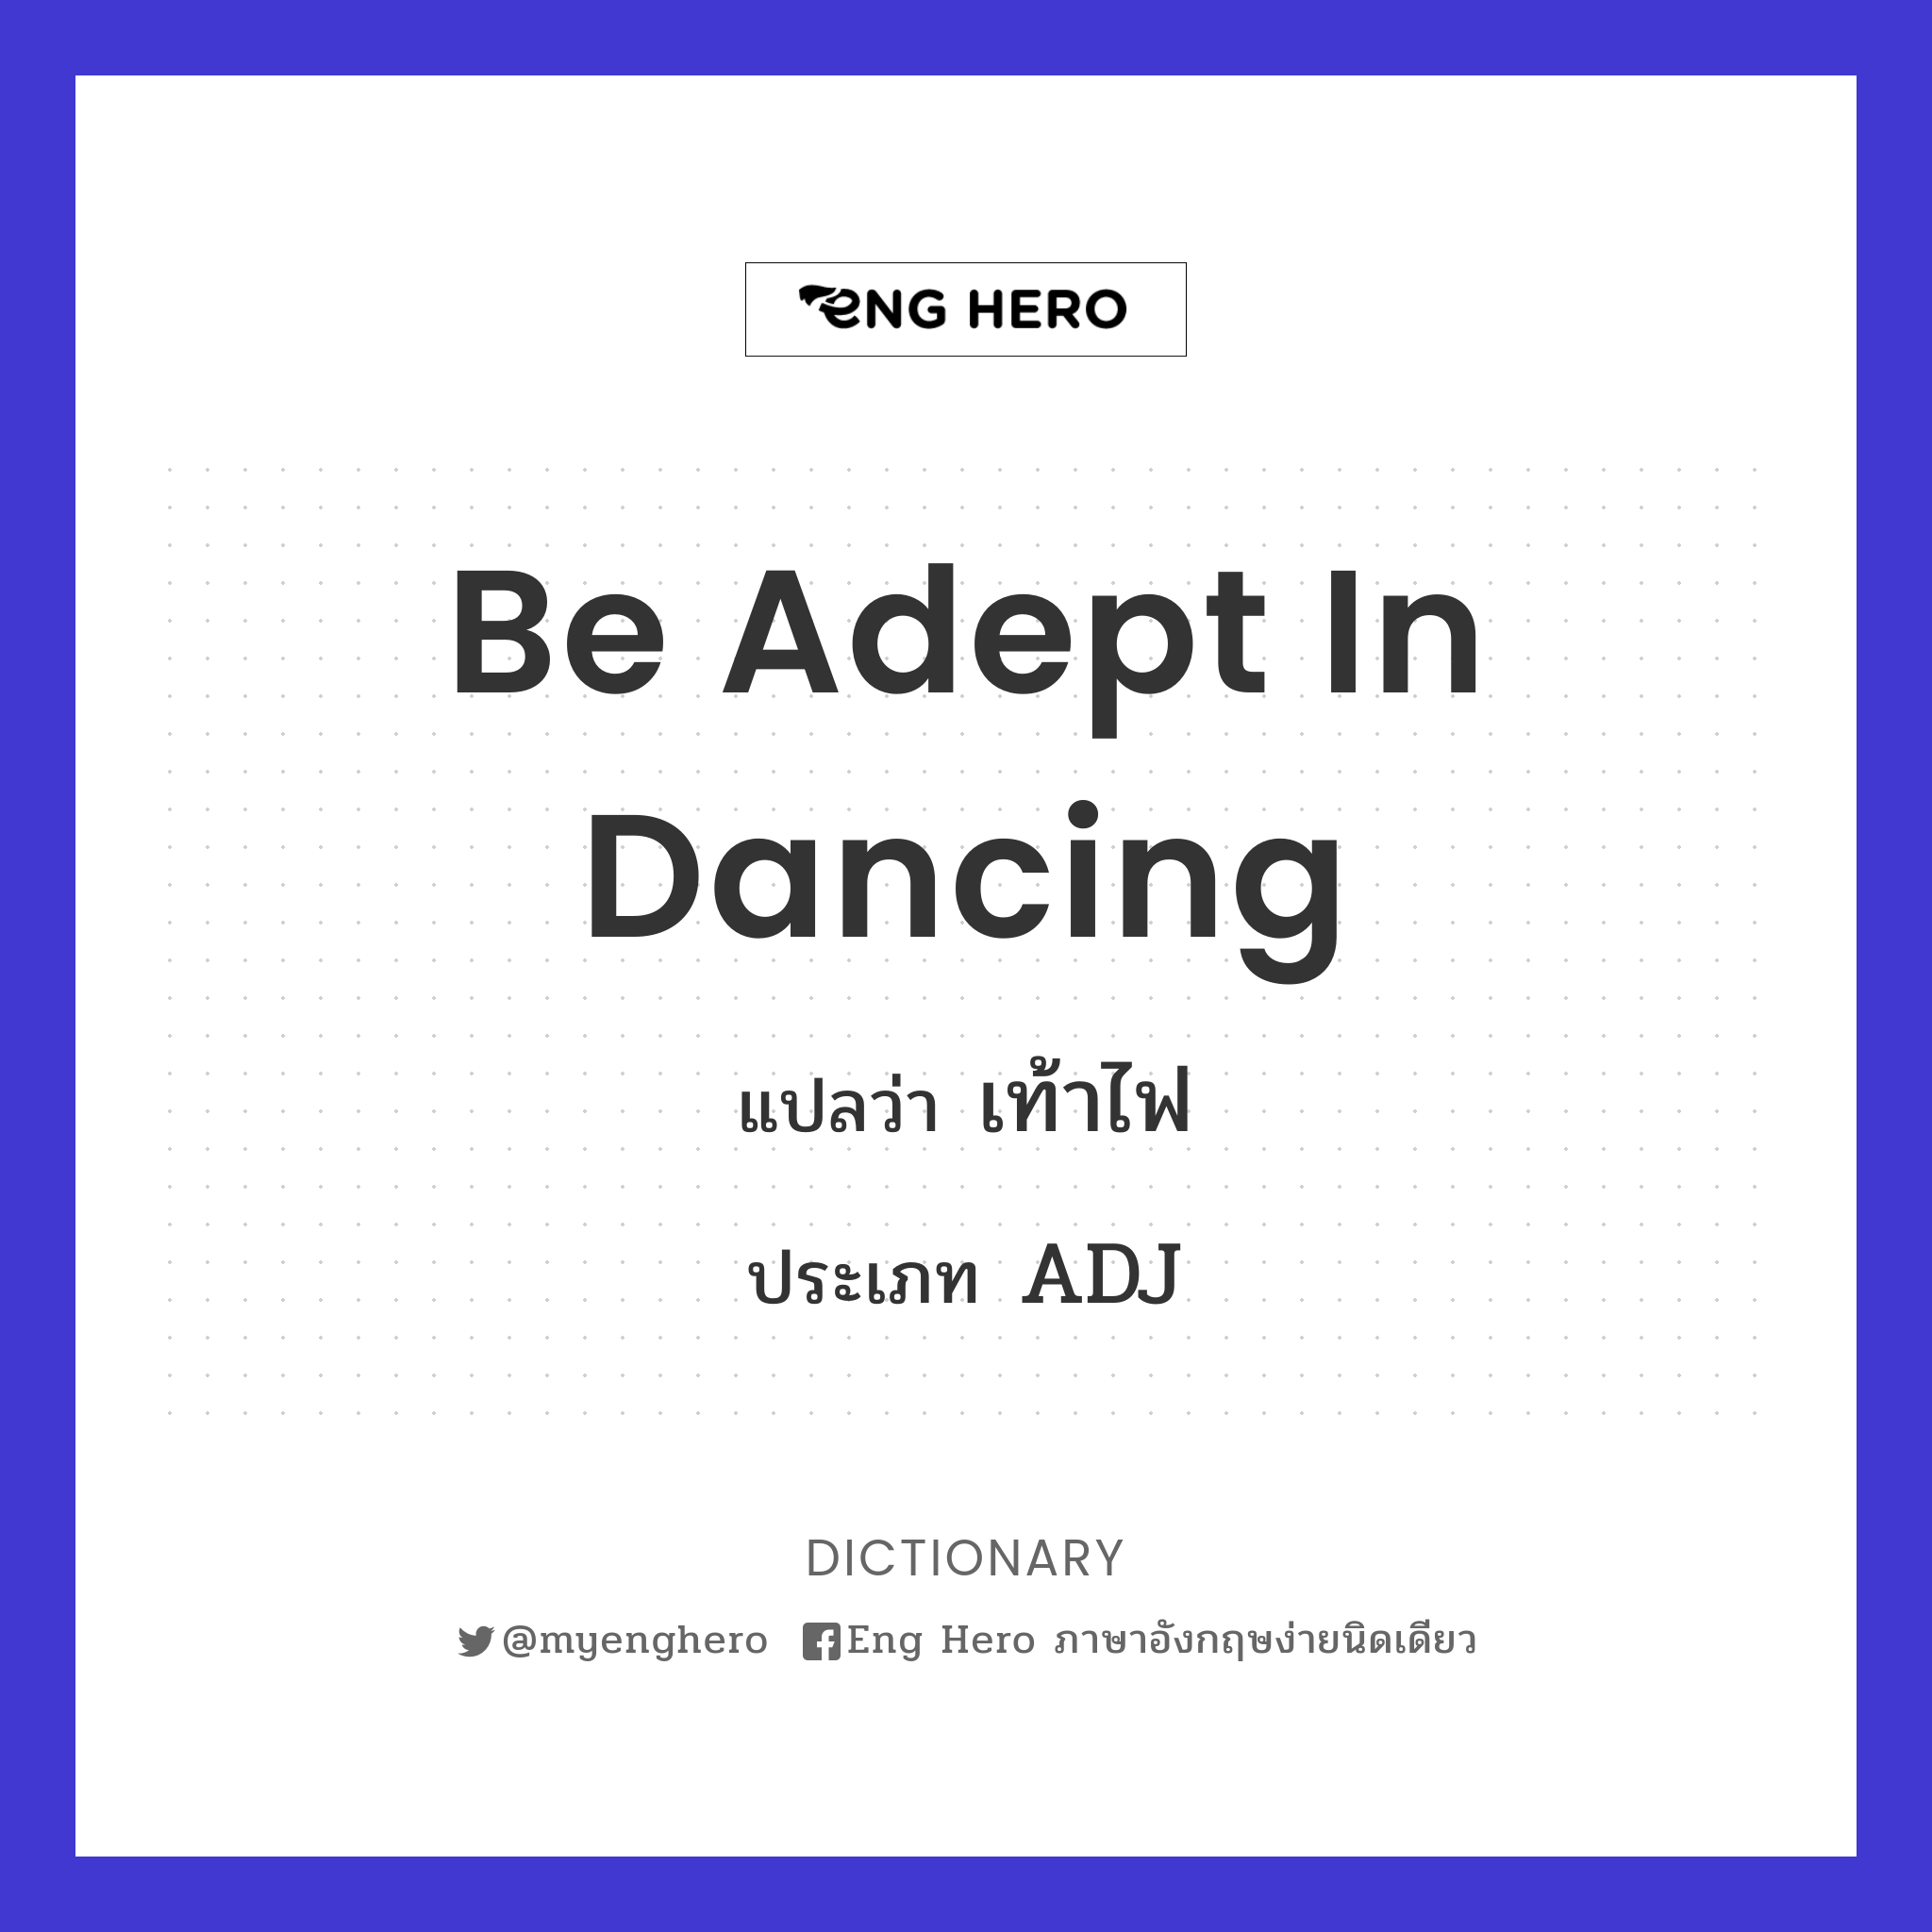 be adept in dancing